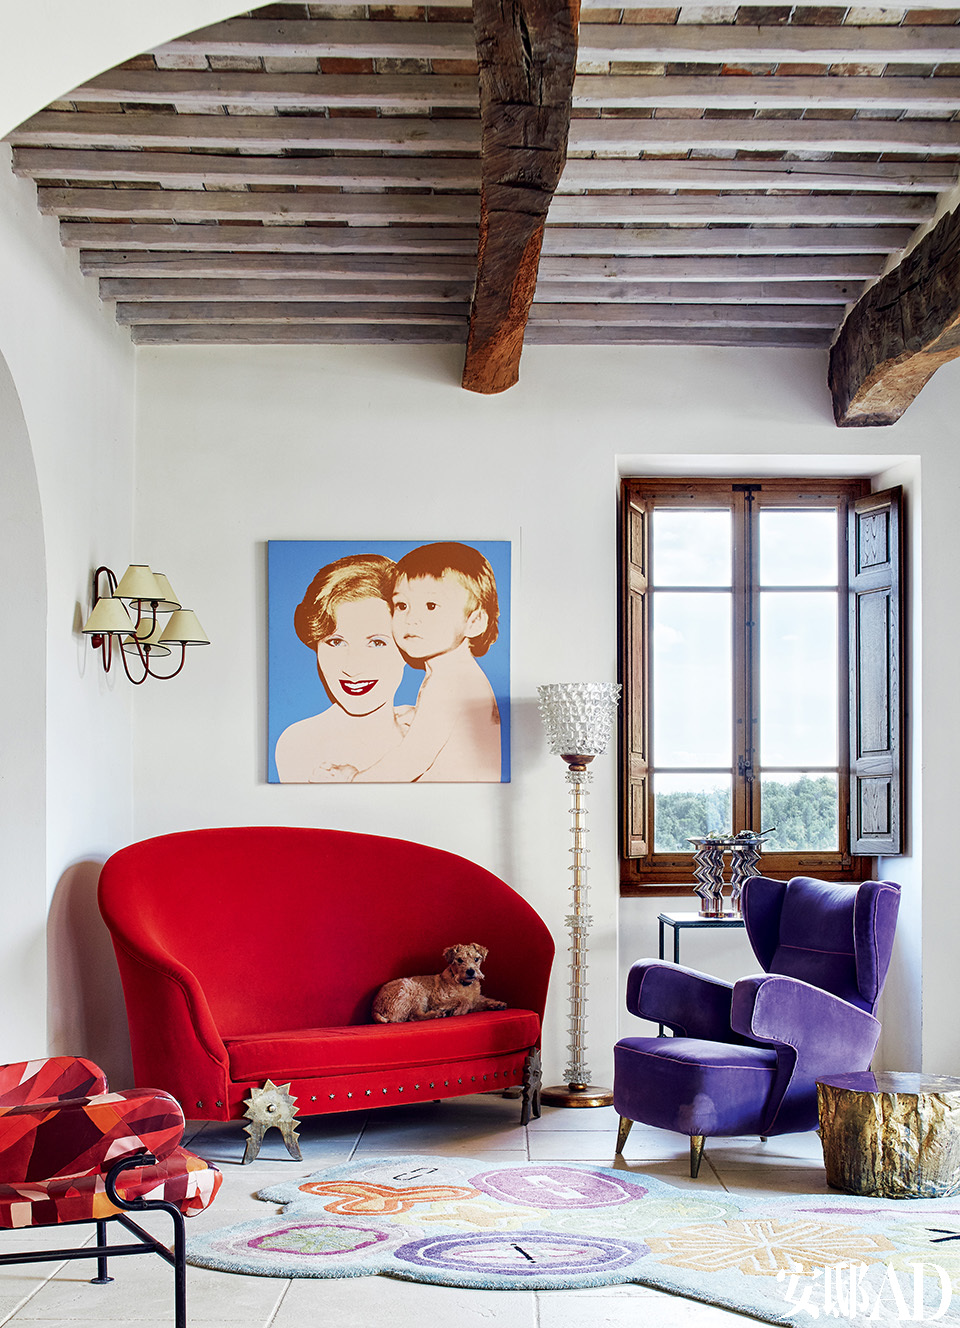  红色沙发来自法国设计师拍档Garouste &Bonetti，紫色扶手椅来自Gio Ponti，玻璃坐灯来自Barovier&Toso。窗边控制台上摆放的玻璃花瓶来自Ettore Sottsass（1917-2007）。左侧墙灯来自法国设计师Jean Royère（1902-1981）。画作来
自安迪·沃霍尔，画上是Suzanne和儿子Marc。